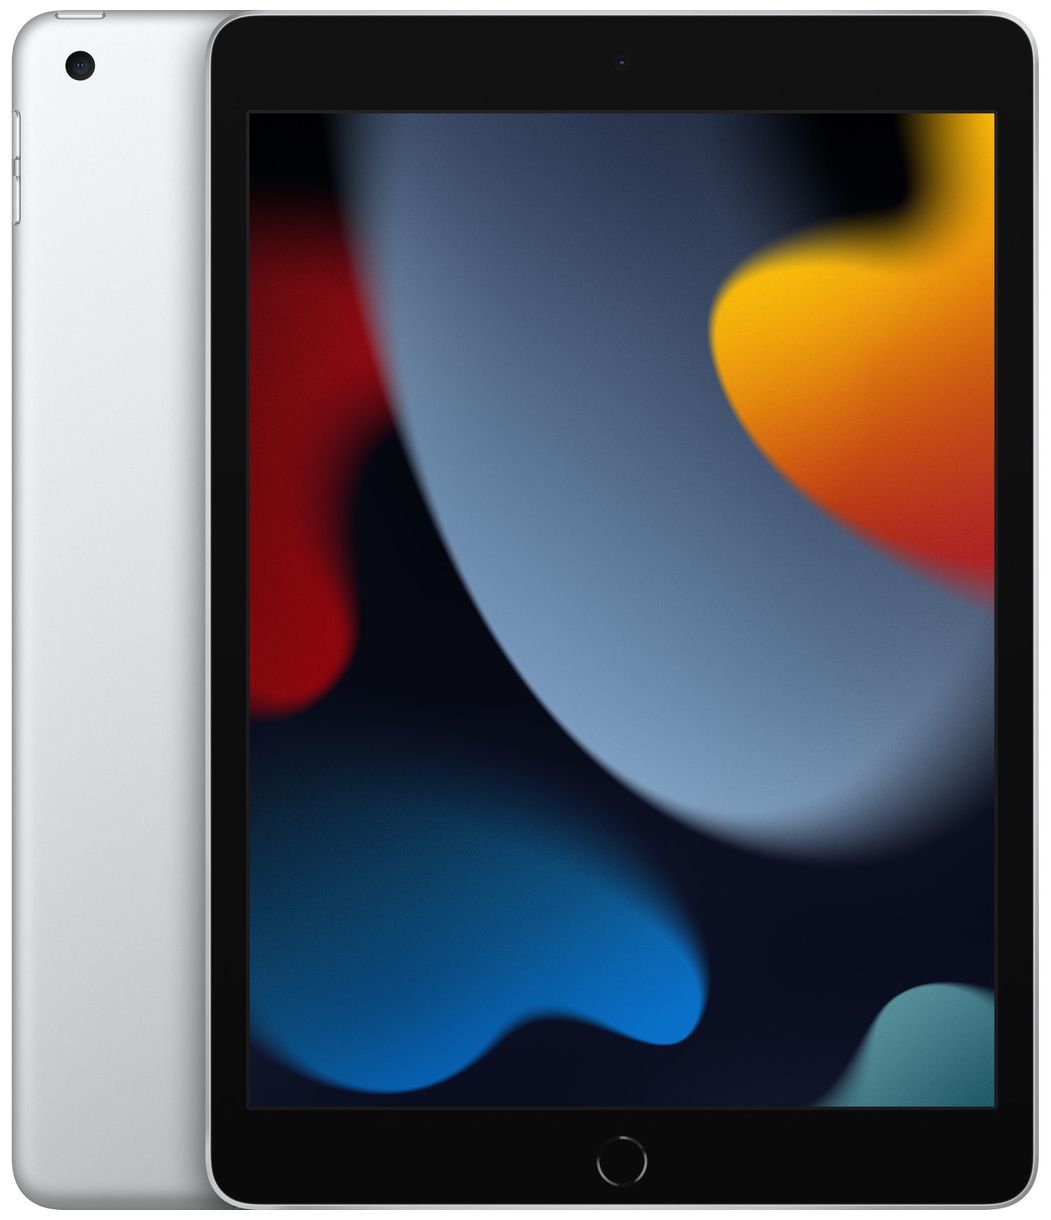 iPad 64 GB Tablet 25,9 cm (10.2 Zoll) iPadOS 8 MP (Silber) 